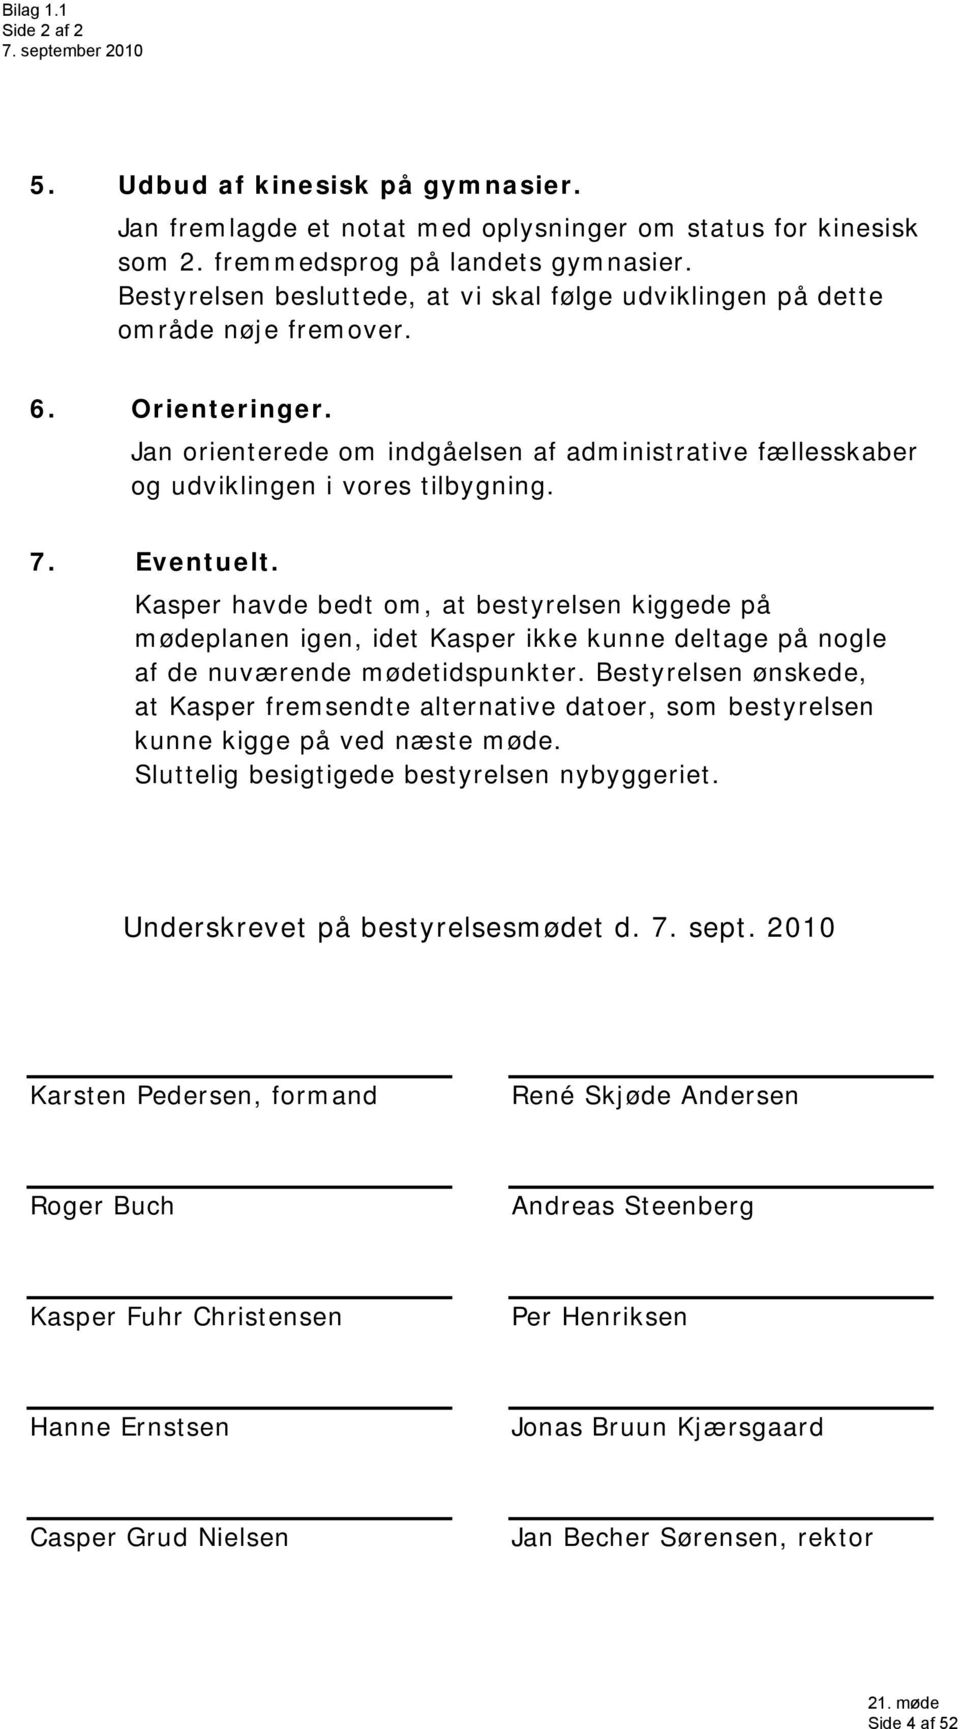 Eventuelt. Kasper havde bedt om, at bestyrelsen kiggede på mødeplanen igen, idet Kasper ikke kunne deltage på nogle af de nuværende mødetidspunkter.